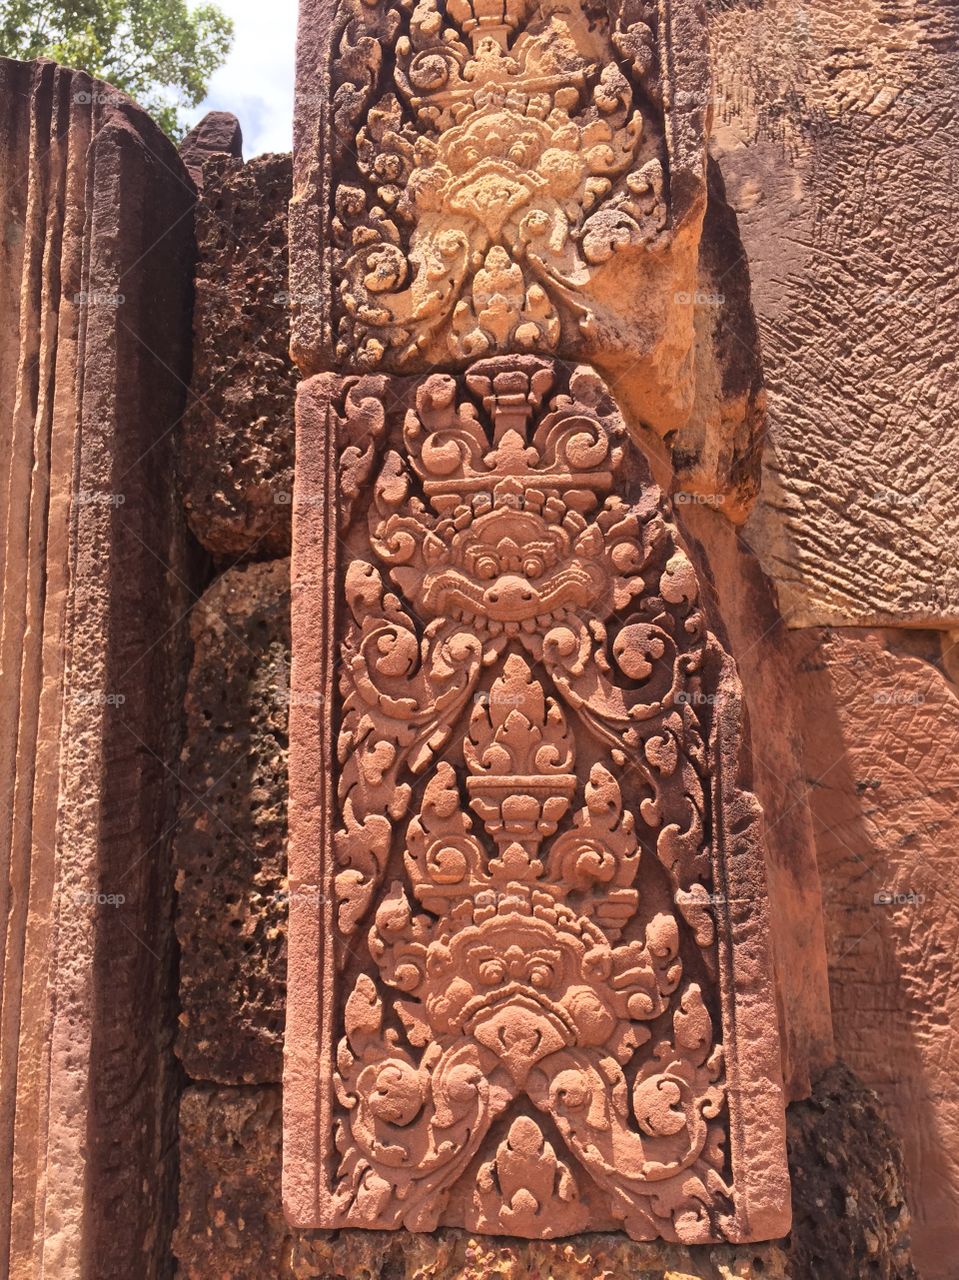 TheArt of Carving at Angkor Wat Temple, Cambodia 